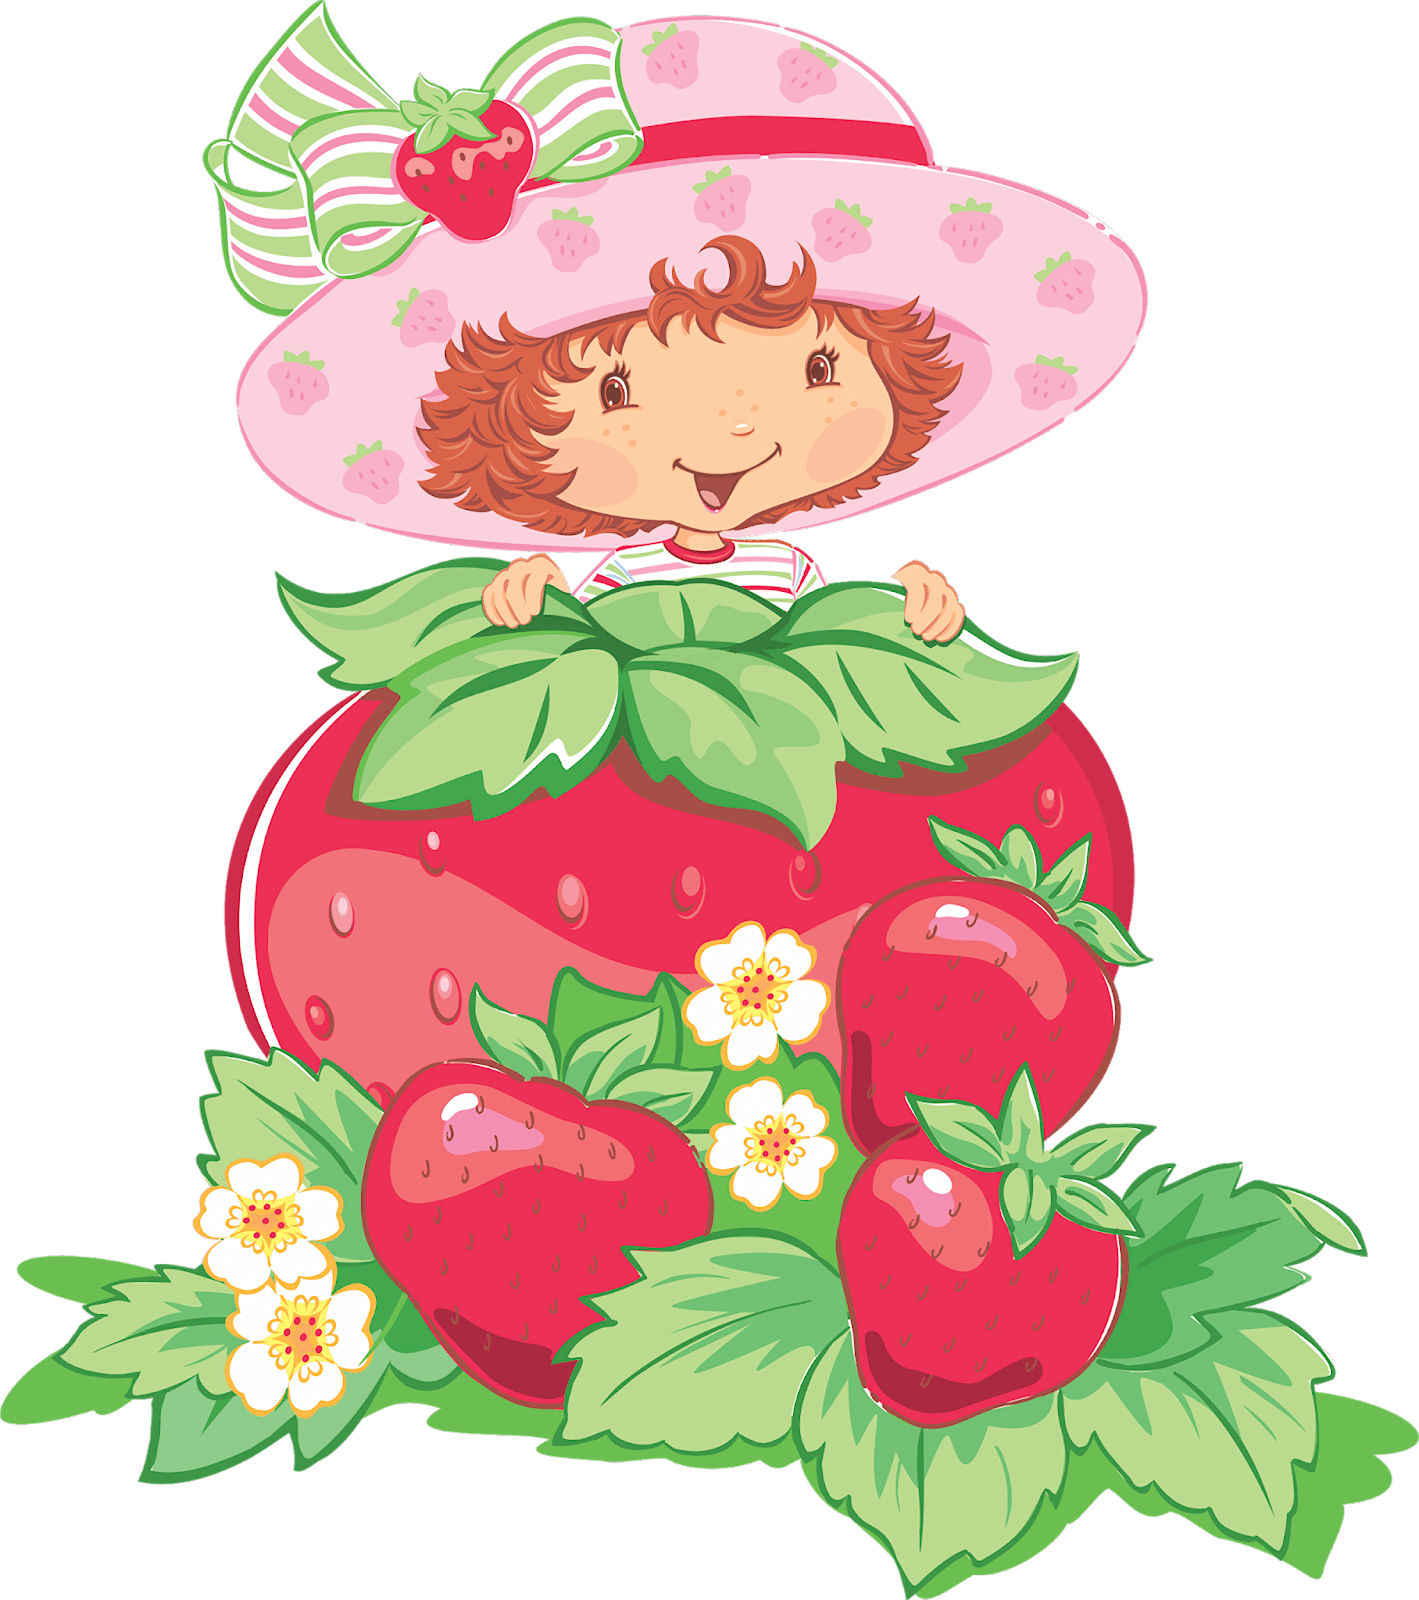 صور كبيرة من strawberry shortcake - rosita fresita ذات خلفية شفافة في صيغة png